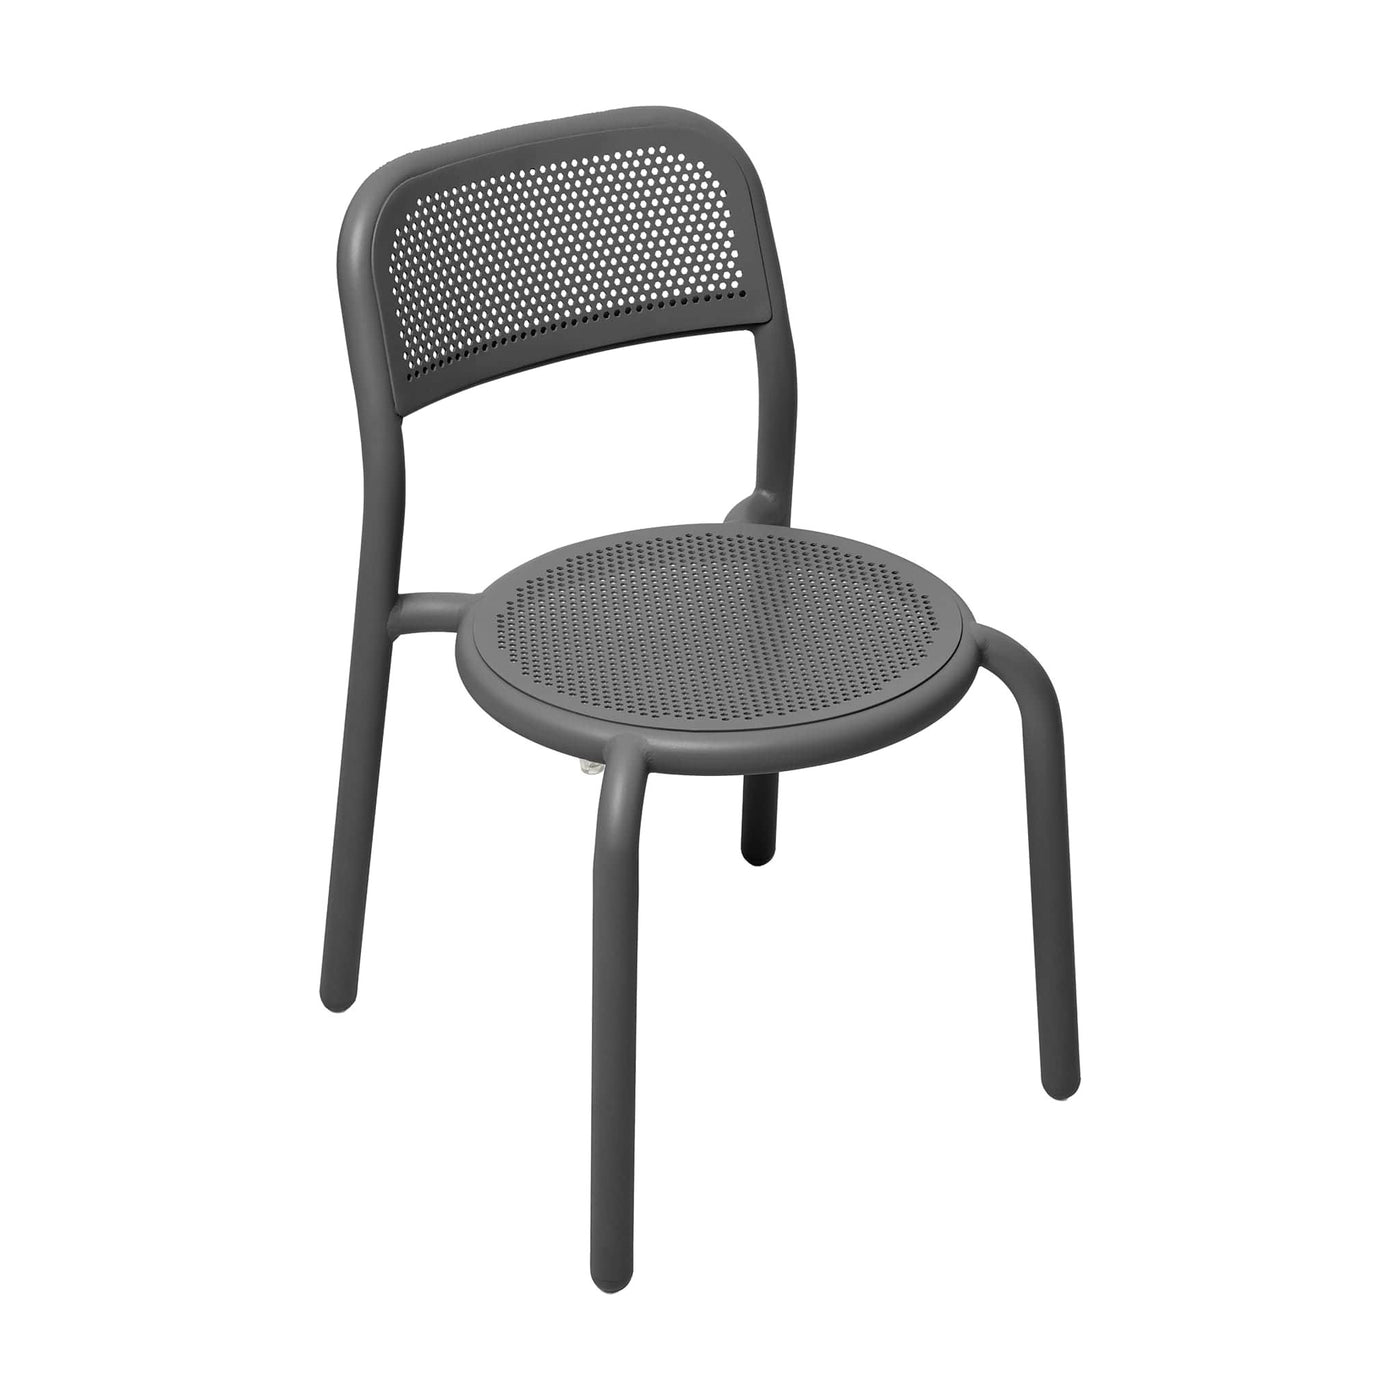 Chaise Toní de Fatboy : cadre en aluminium, design perforé et empilable jusqu'à 4 chaises. Anthracite.